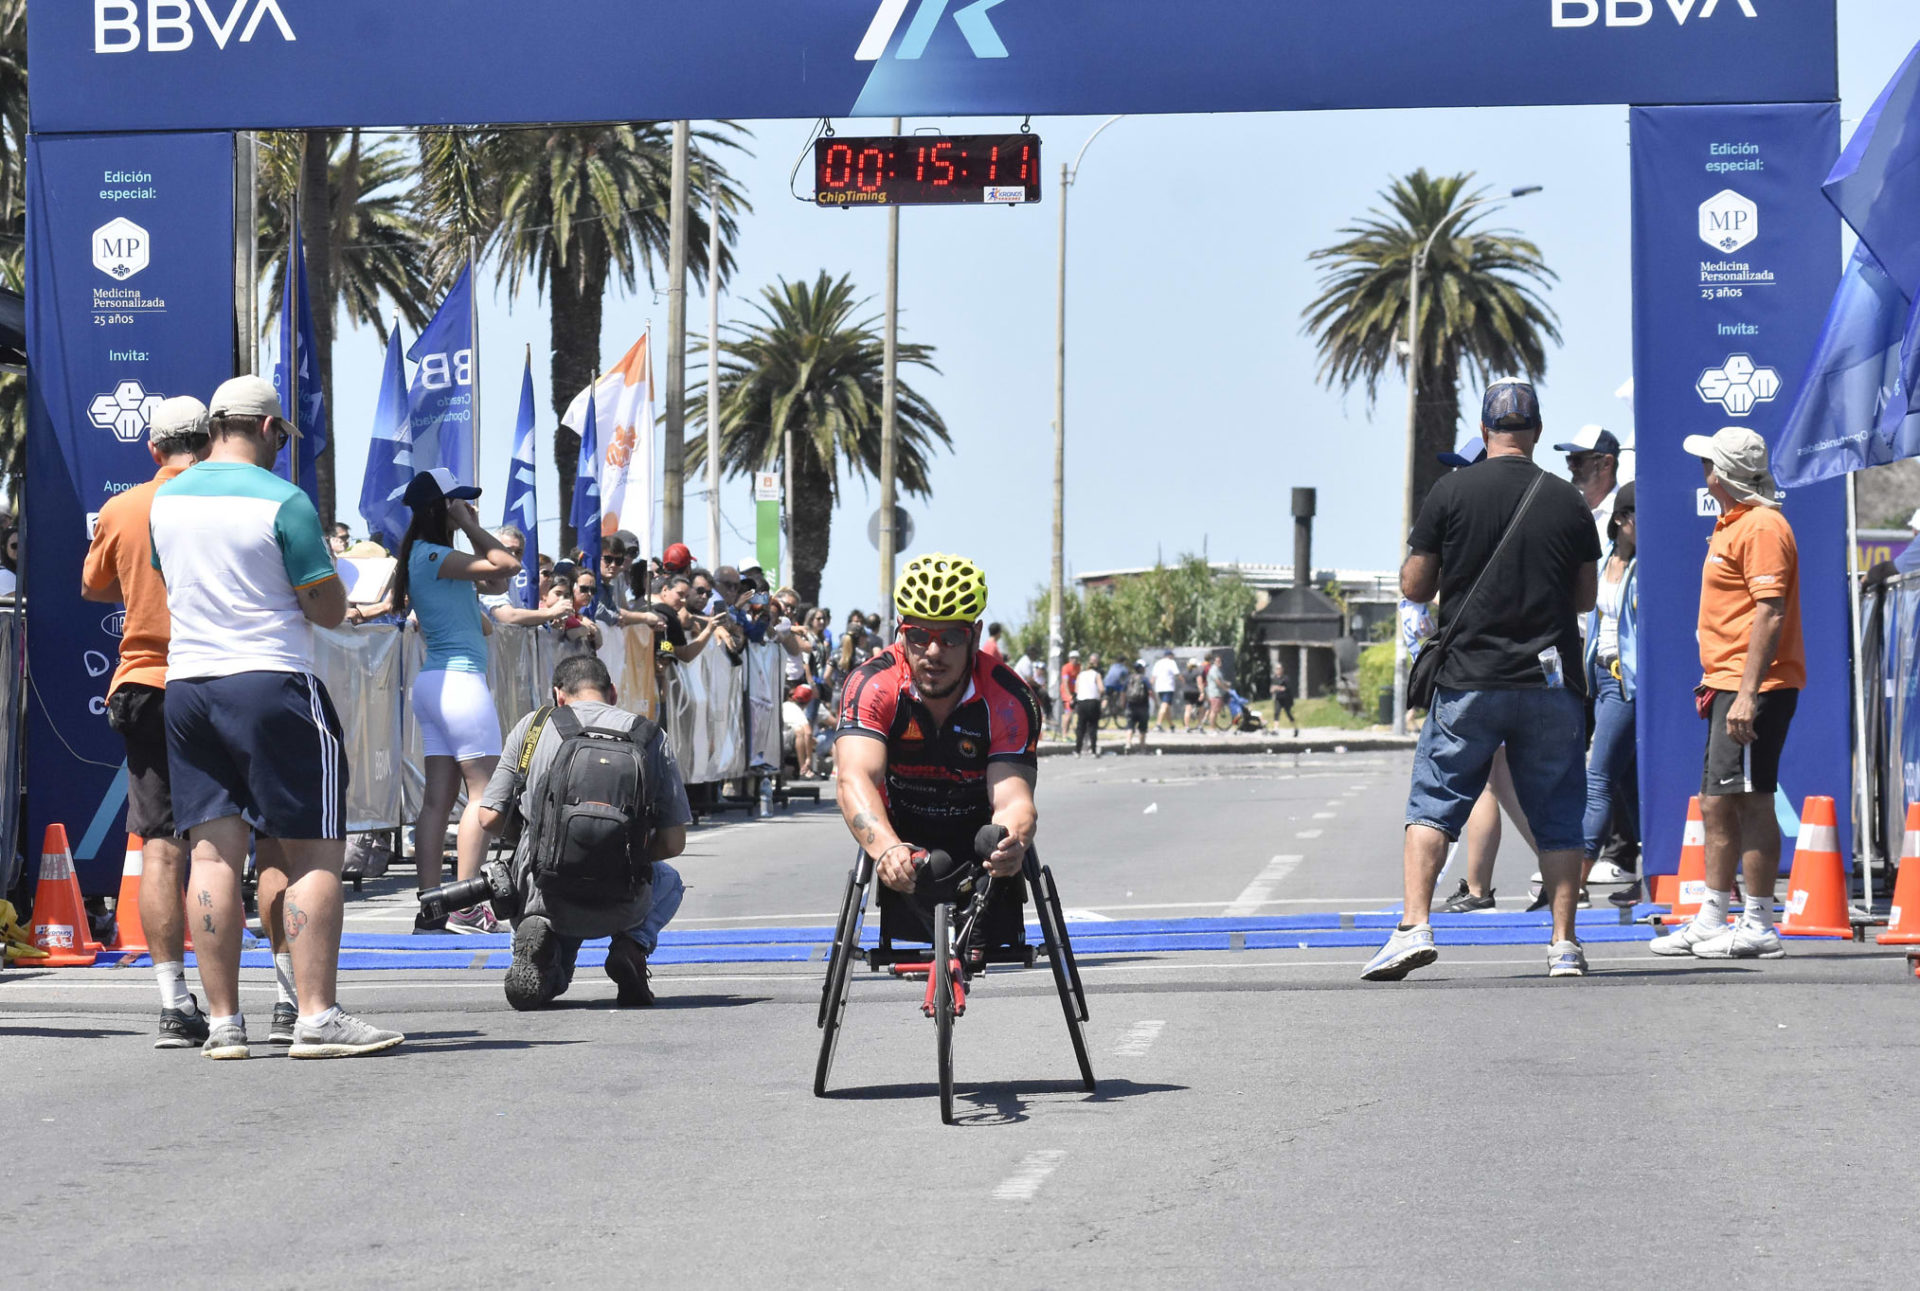 7K ganador en silla de ruedas